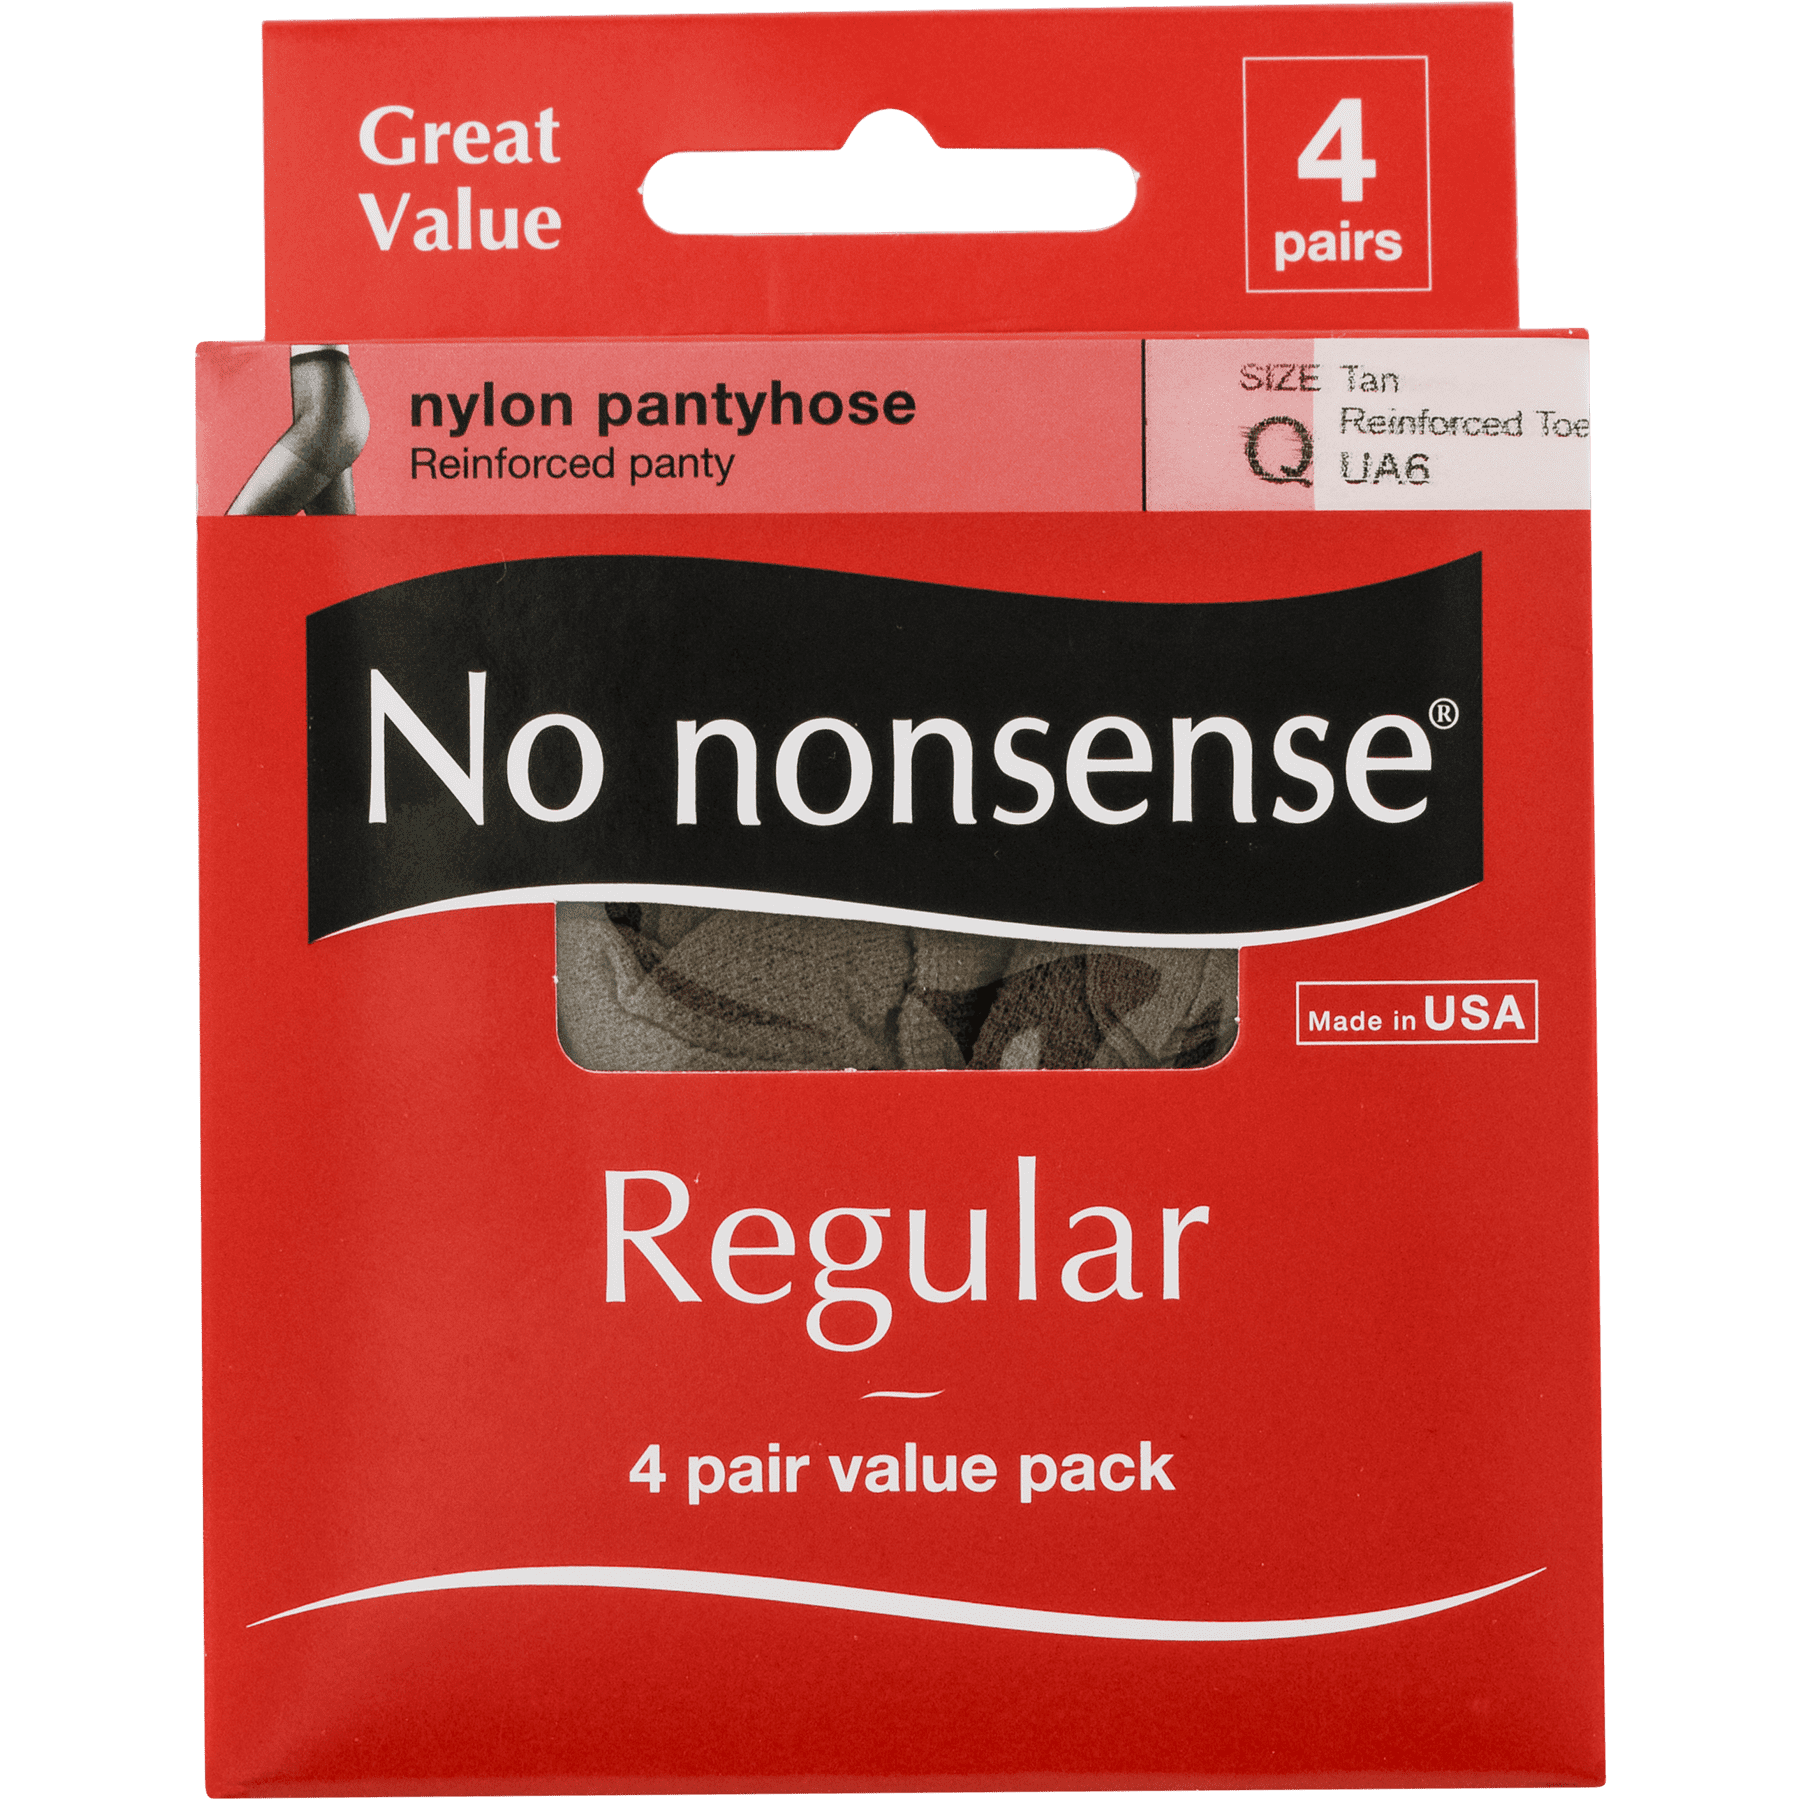 No nonsense Women's Regular Pantyhose 4 Pair Value Pack Tan Plus